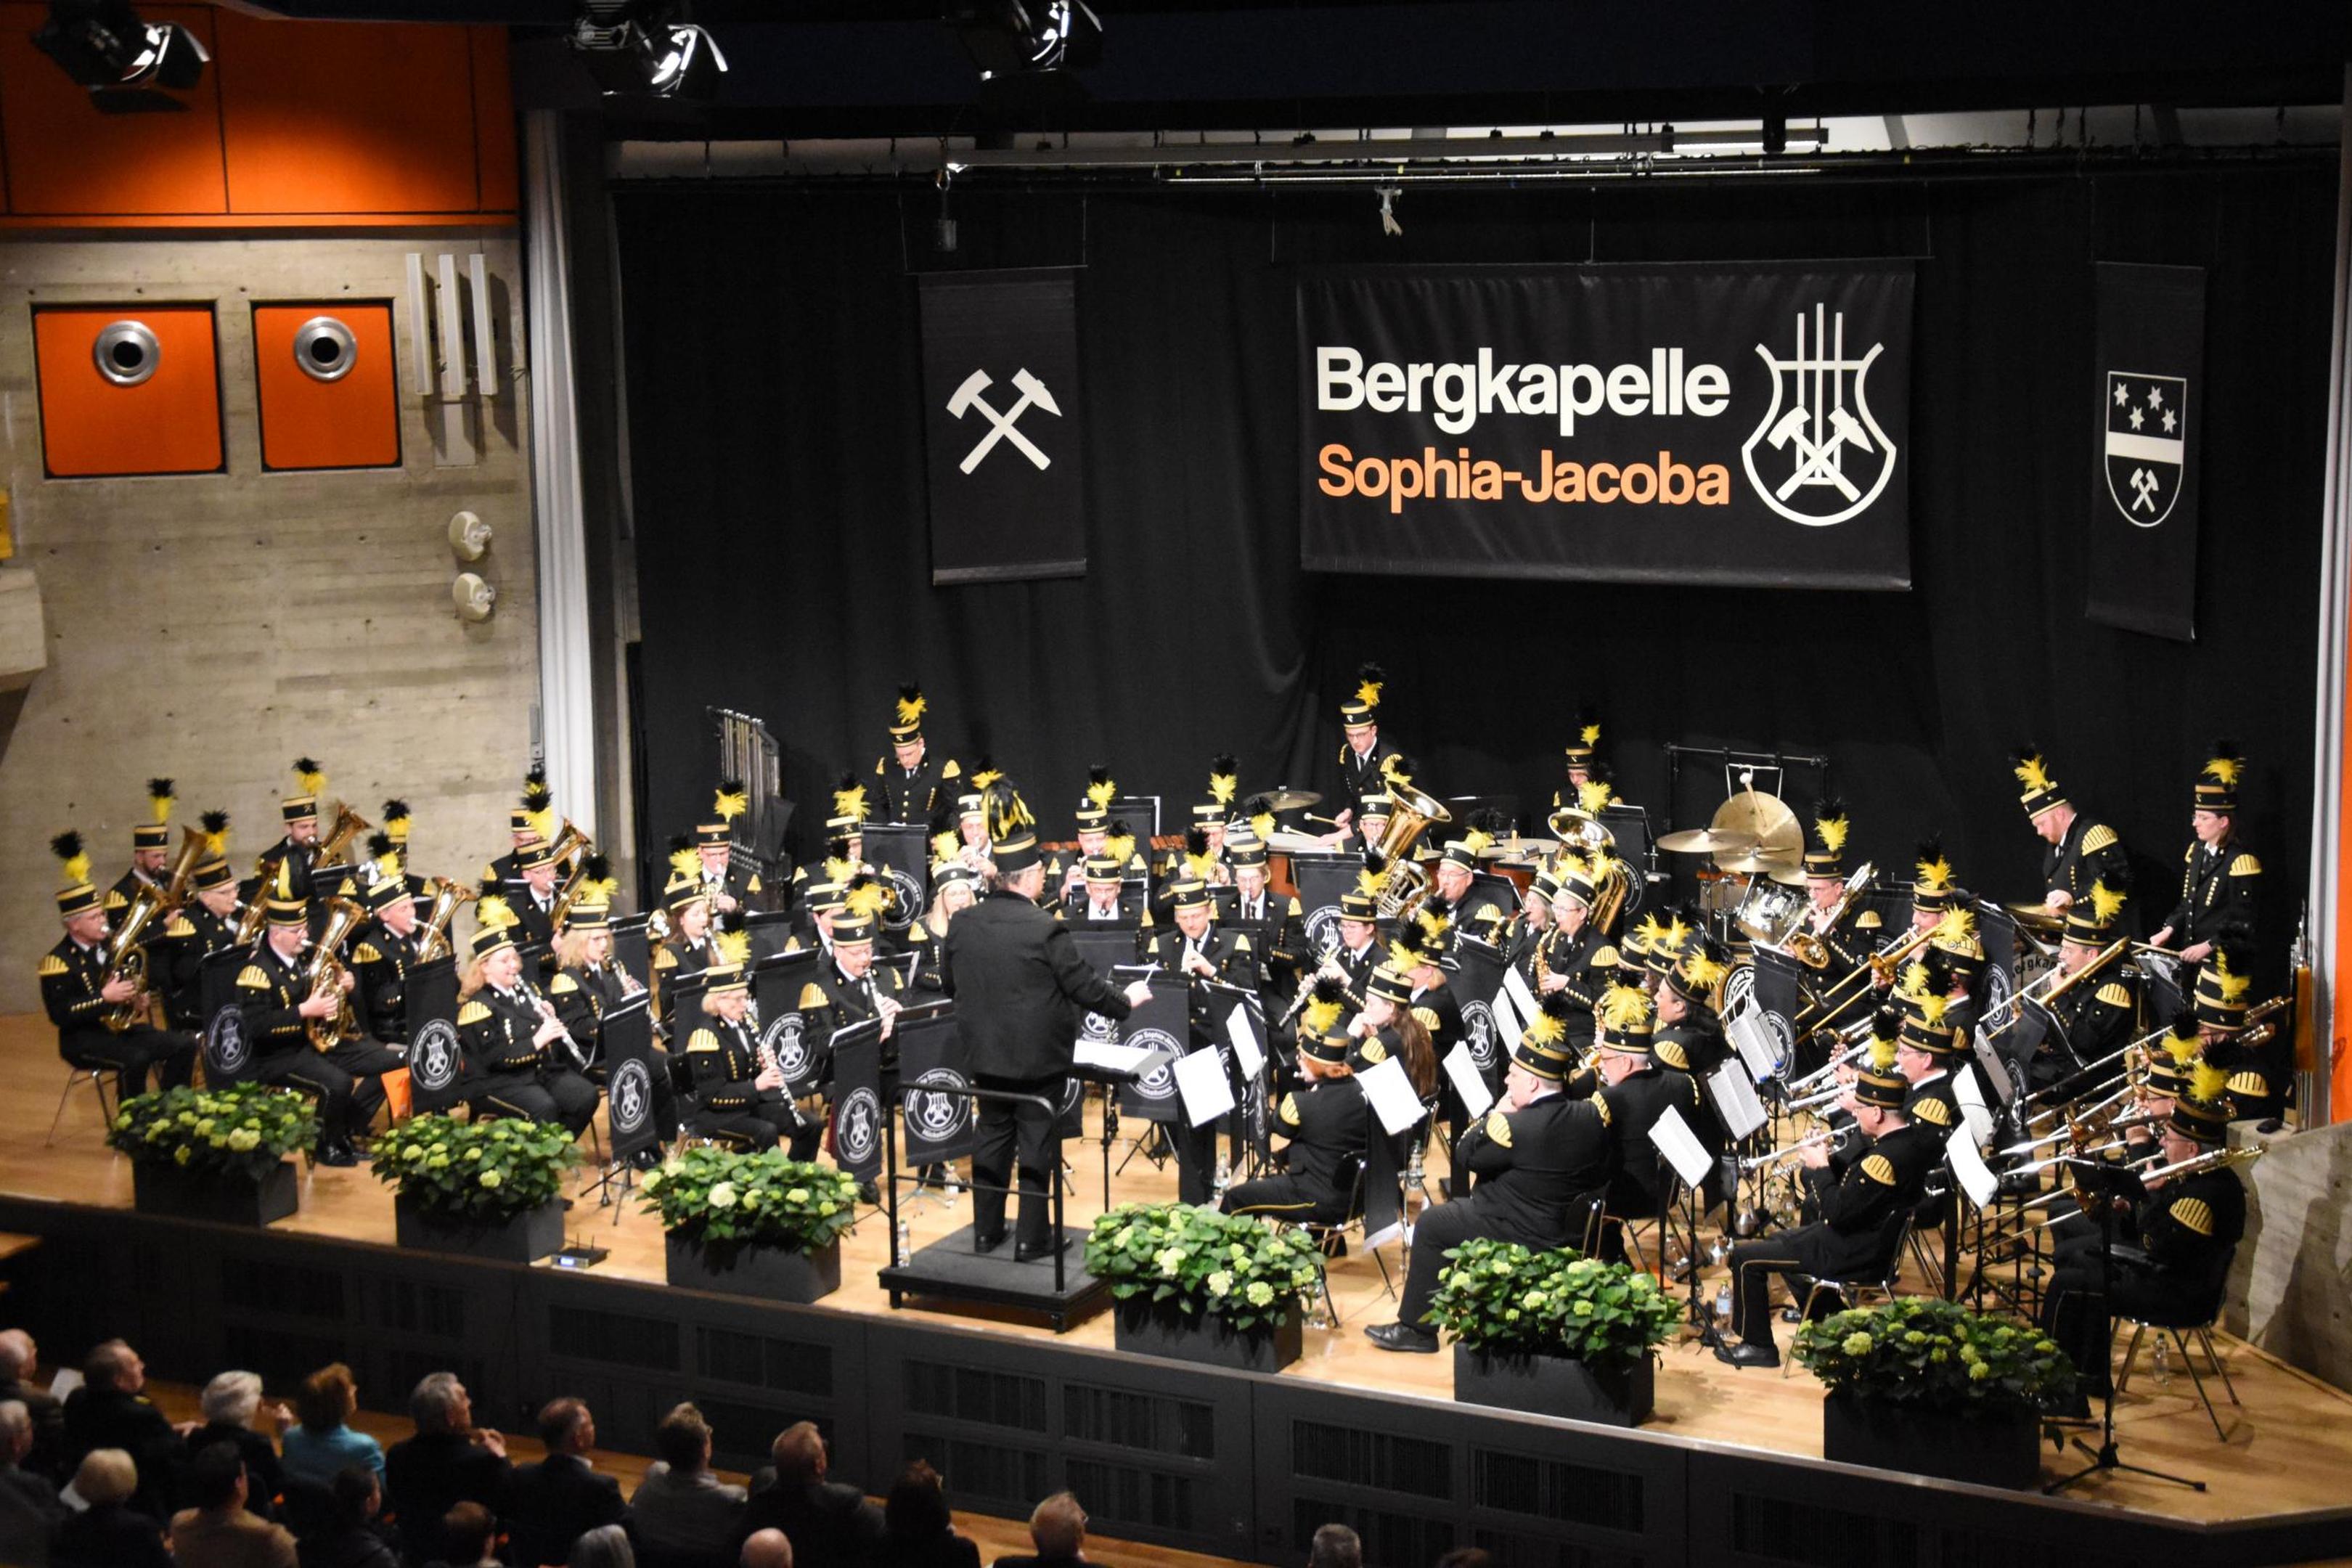 Die Bergkapelle Sophia-Jacoba spielte in der ausverkauften Aula Hückelhoven ihr Jahreskonzert unter der Leitung ihres Dirigenten Rolf Deckers. 